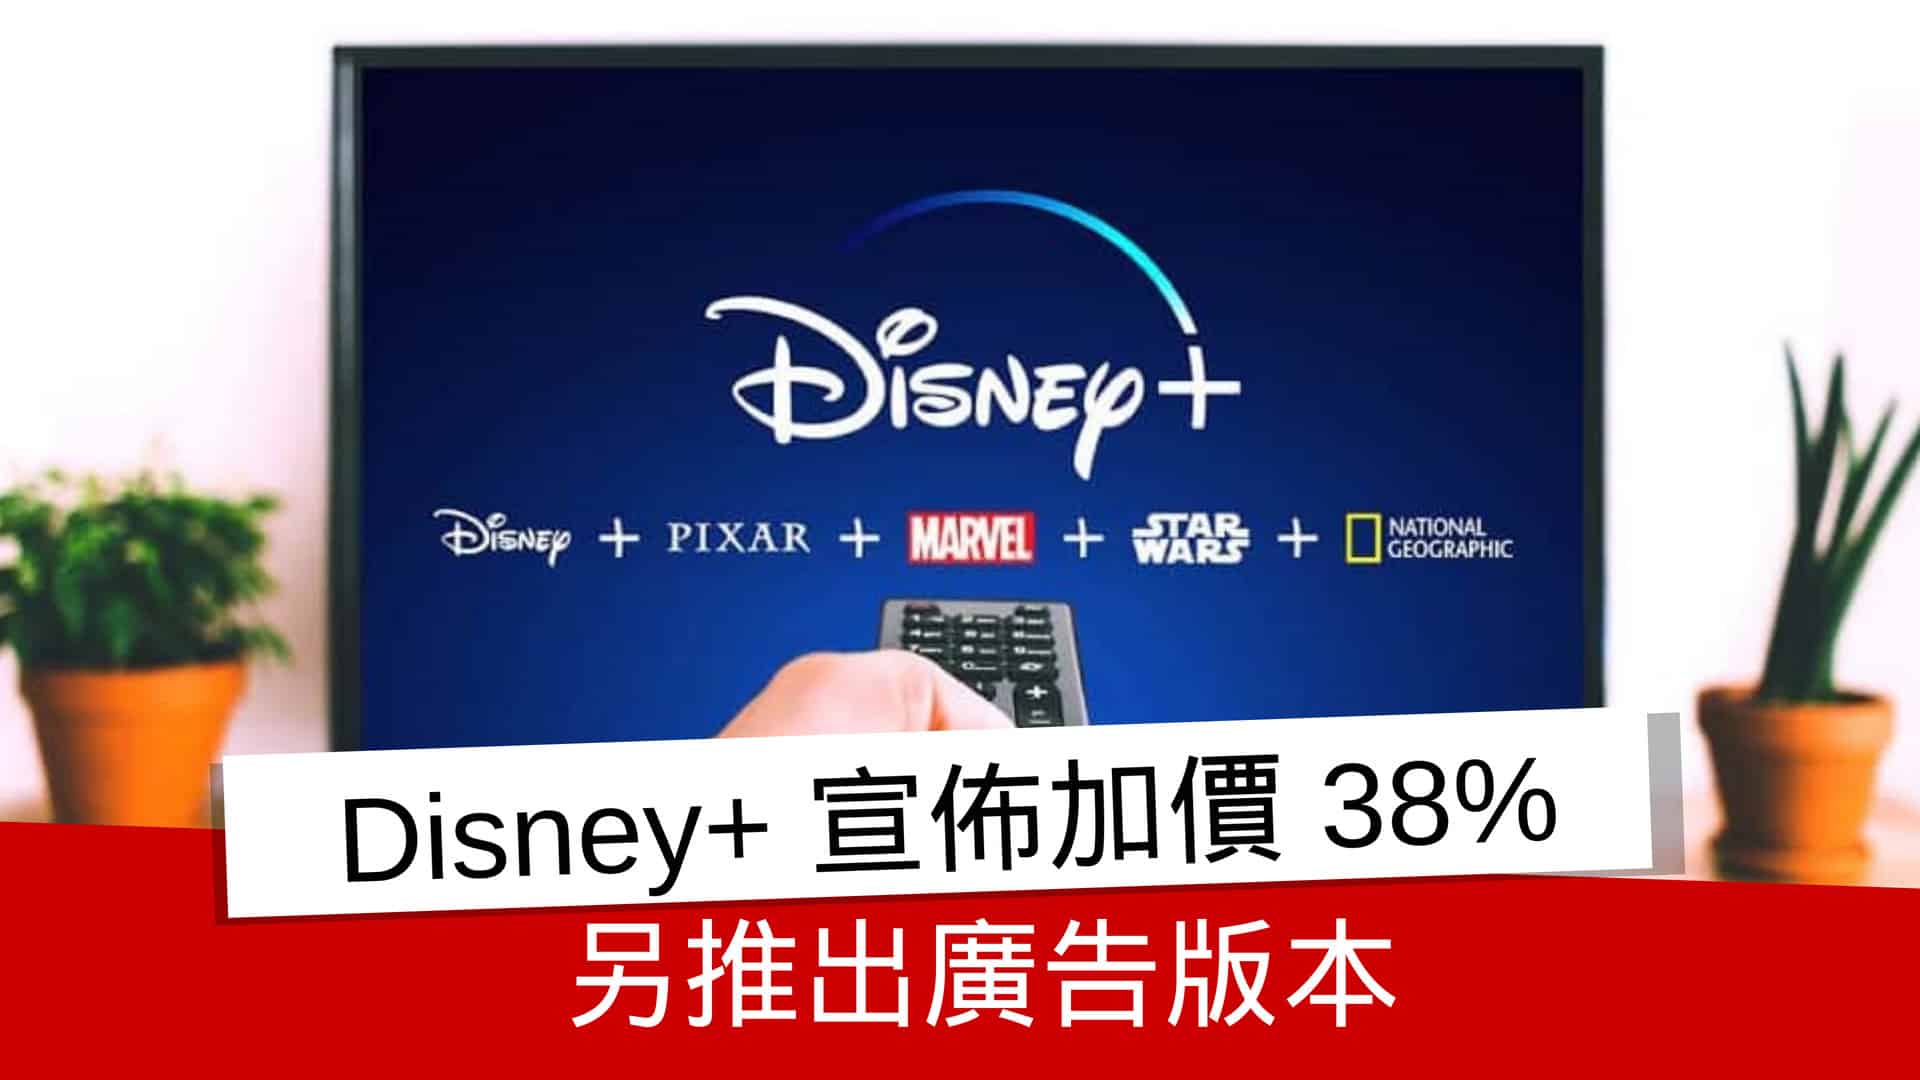 [閒聊] Disney+12月起無廣告服務加價38%